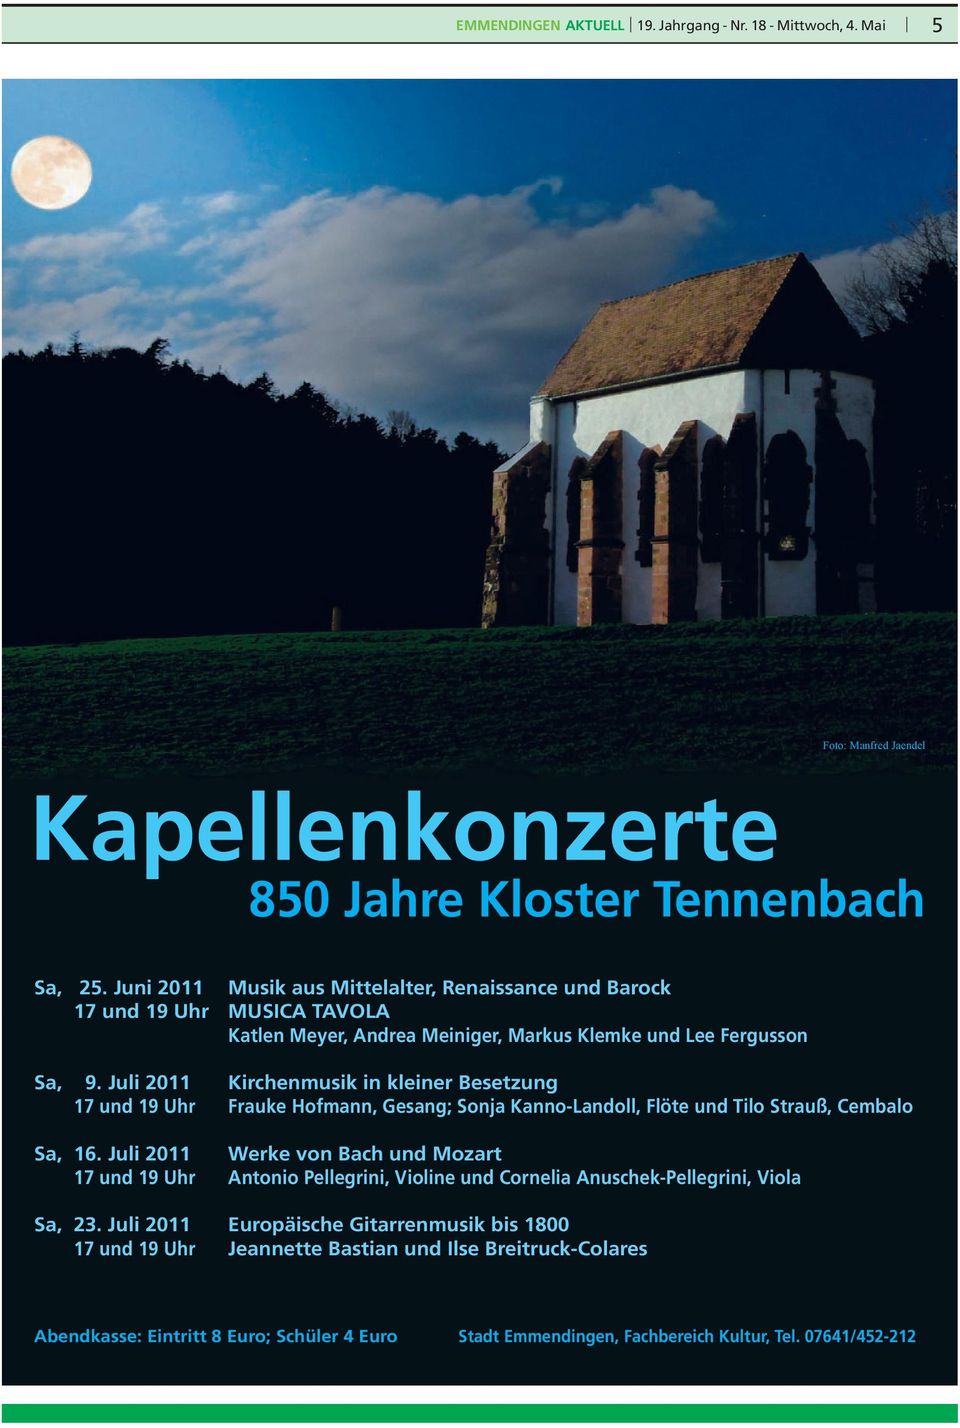 Juli 2011 Kirchenmusik in kleiner Besetzung 17 und 19 Uhr Frauke Hofmann, Gesang; Sonja Kanno-Landoll, Flöte und Tilo Strauß, Cembalo Sa, 16.